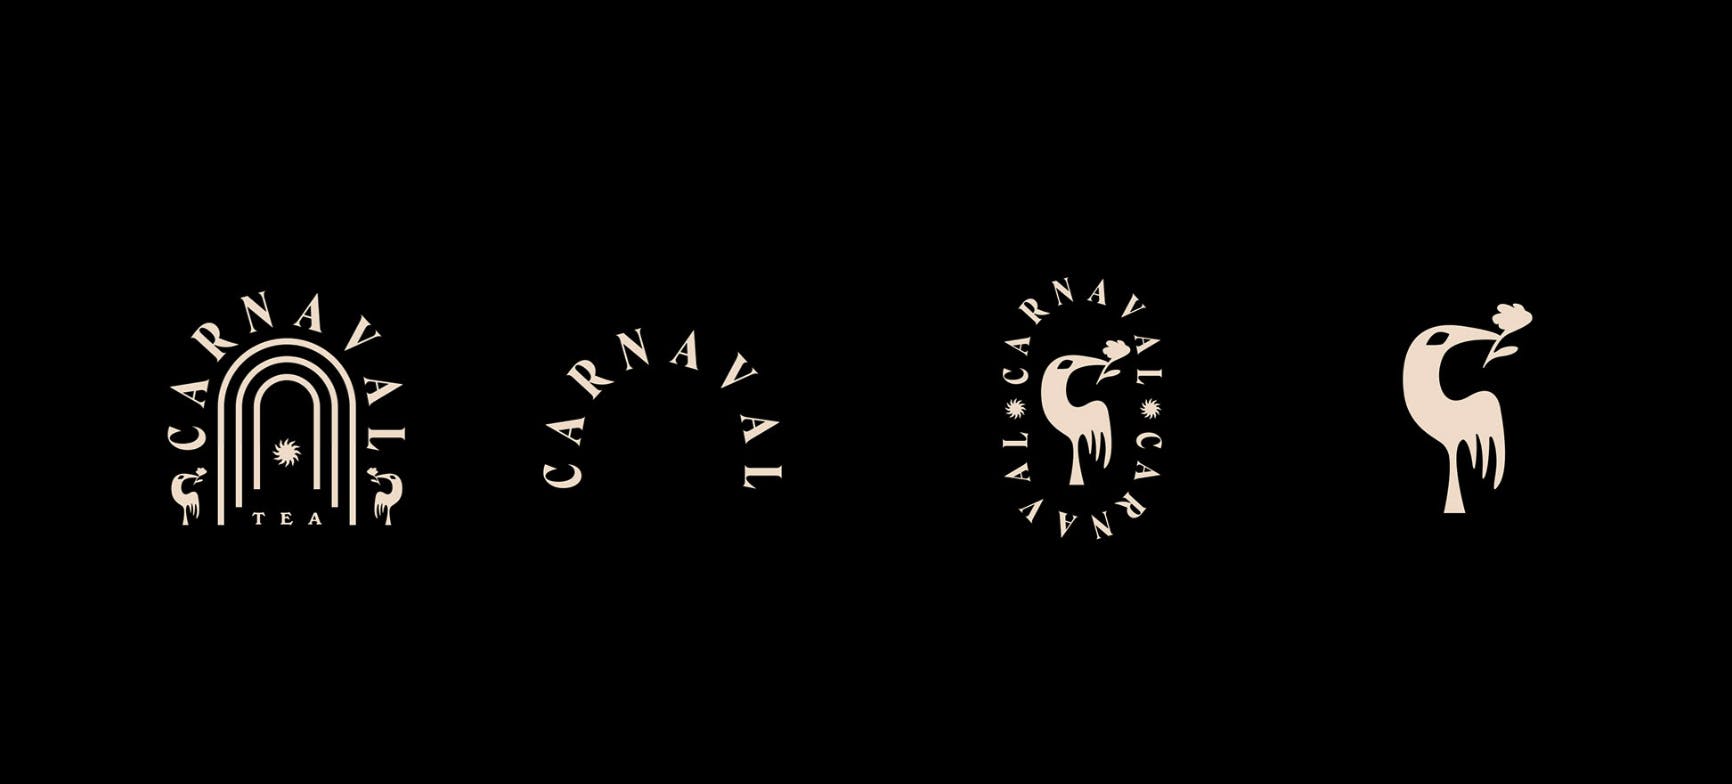 Carnaval Tea logo elements